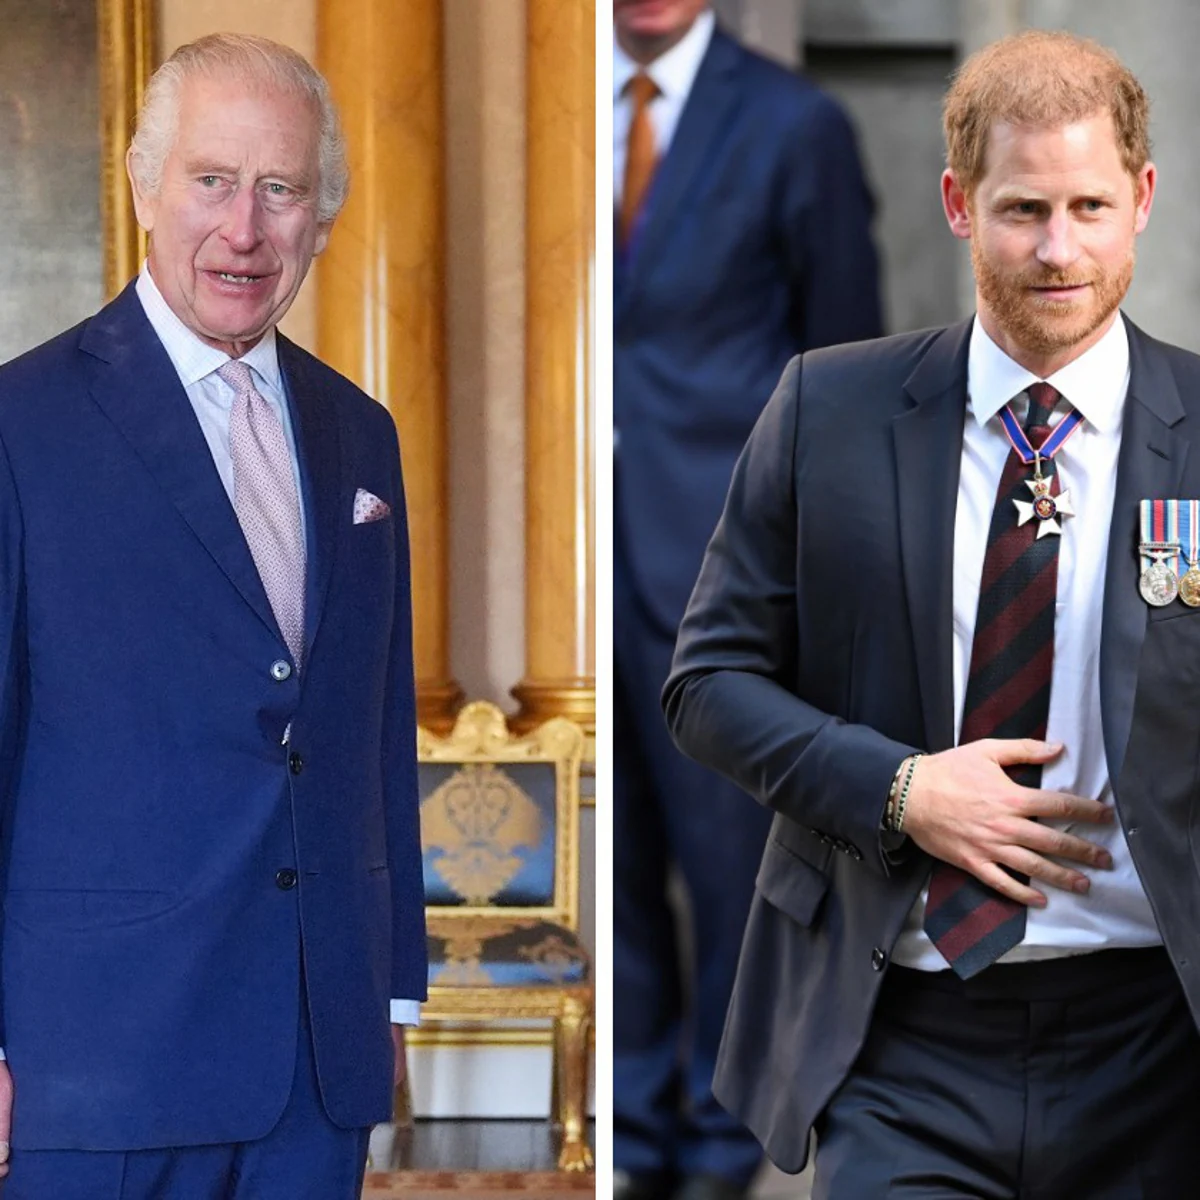 Los desplantes del Rey Carlos III con su hijo, el Príncipe Harry, abren aún más la brecha